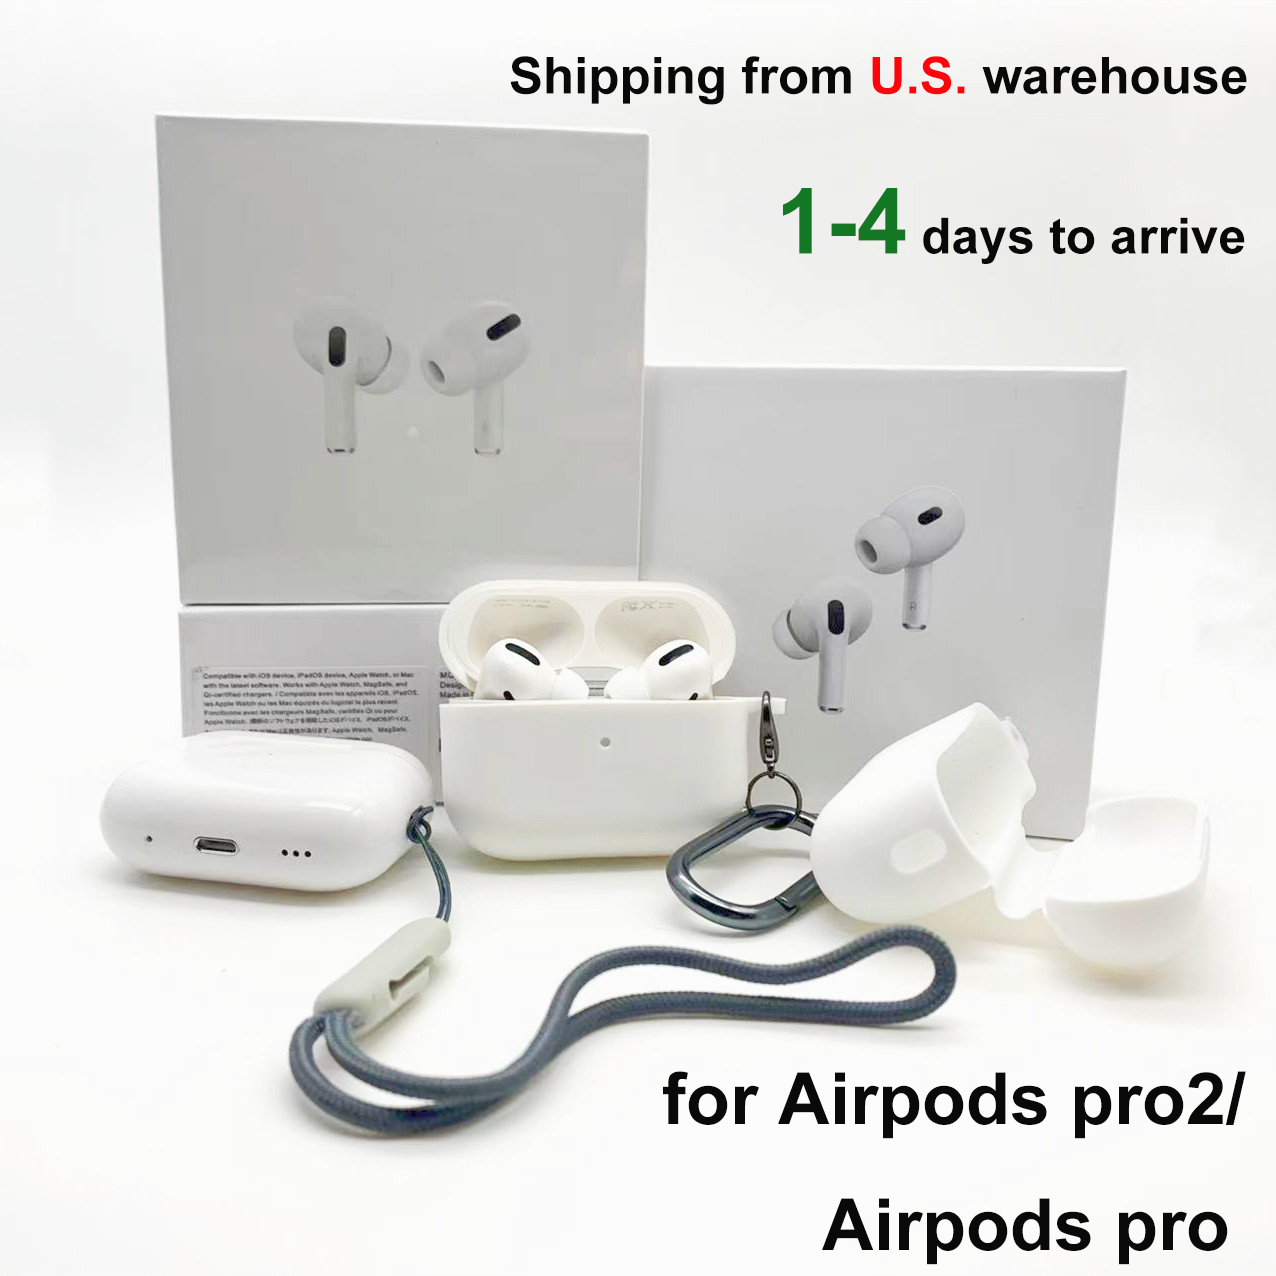 Pour Apple Airpdos Pro 2 ￉couteurs 2e g￩n￩ration Accessoires Bluetooth CASHONES CASE CASHE SILICONE SILICONE JUBLE AIRPODS DE PROTECTION AIRPODS 3 GEN 3 PODS PROC